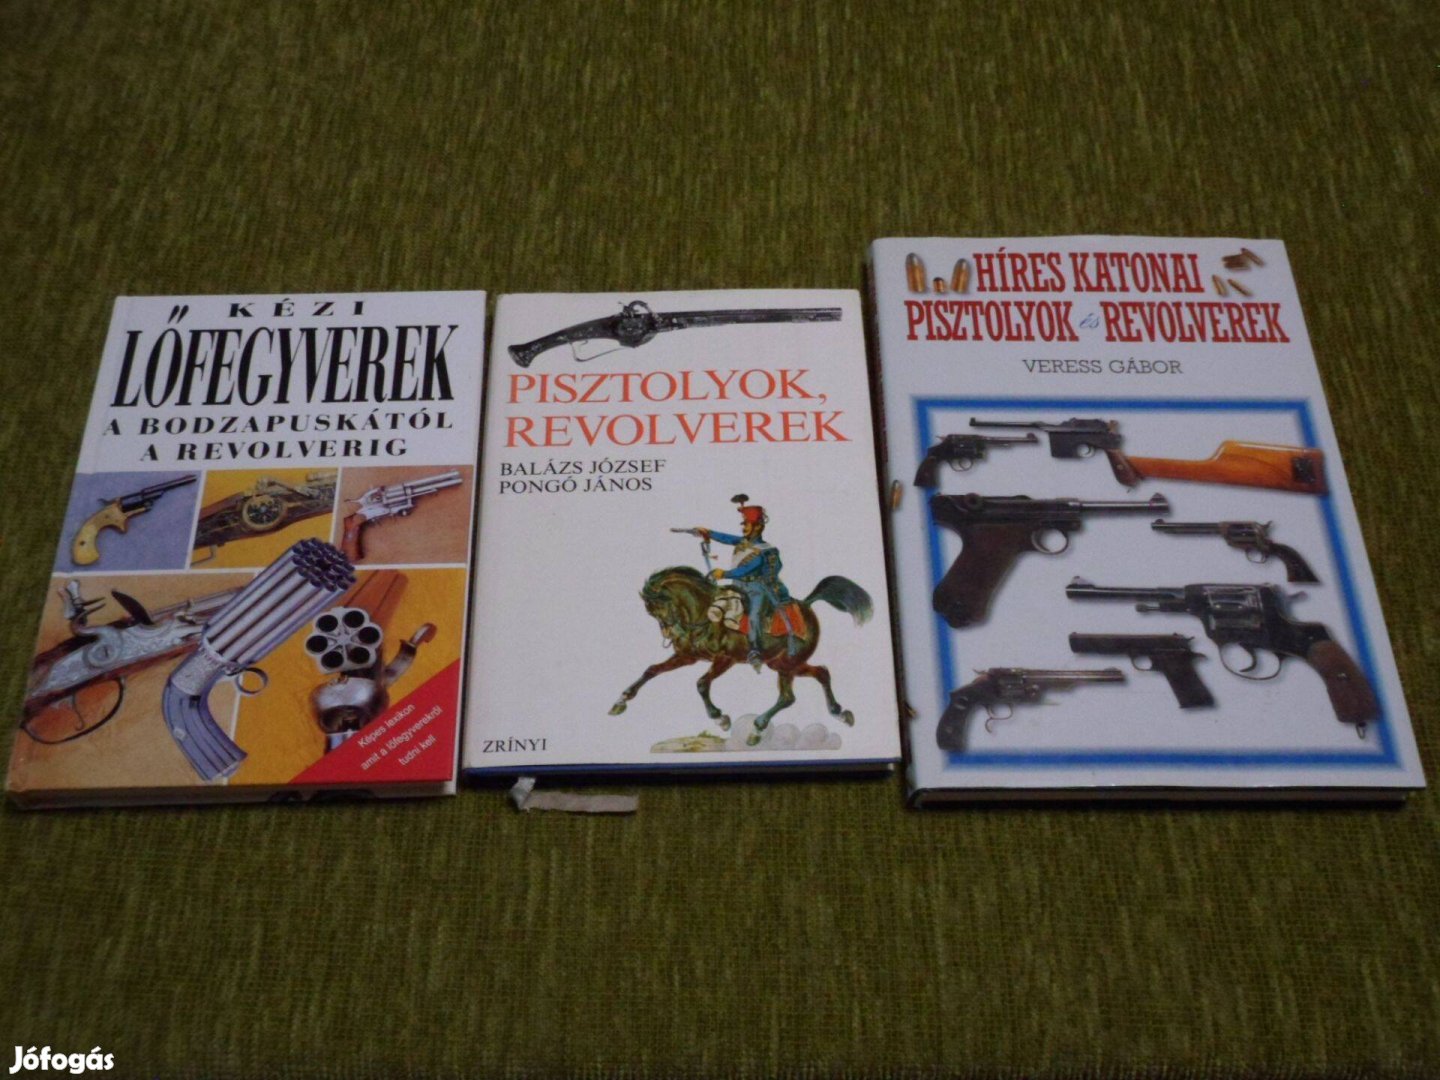 Kézi lőfegyverek, pisztolyok, revolverek könyvcsomag